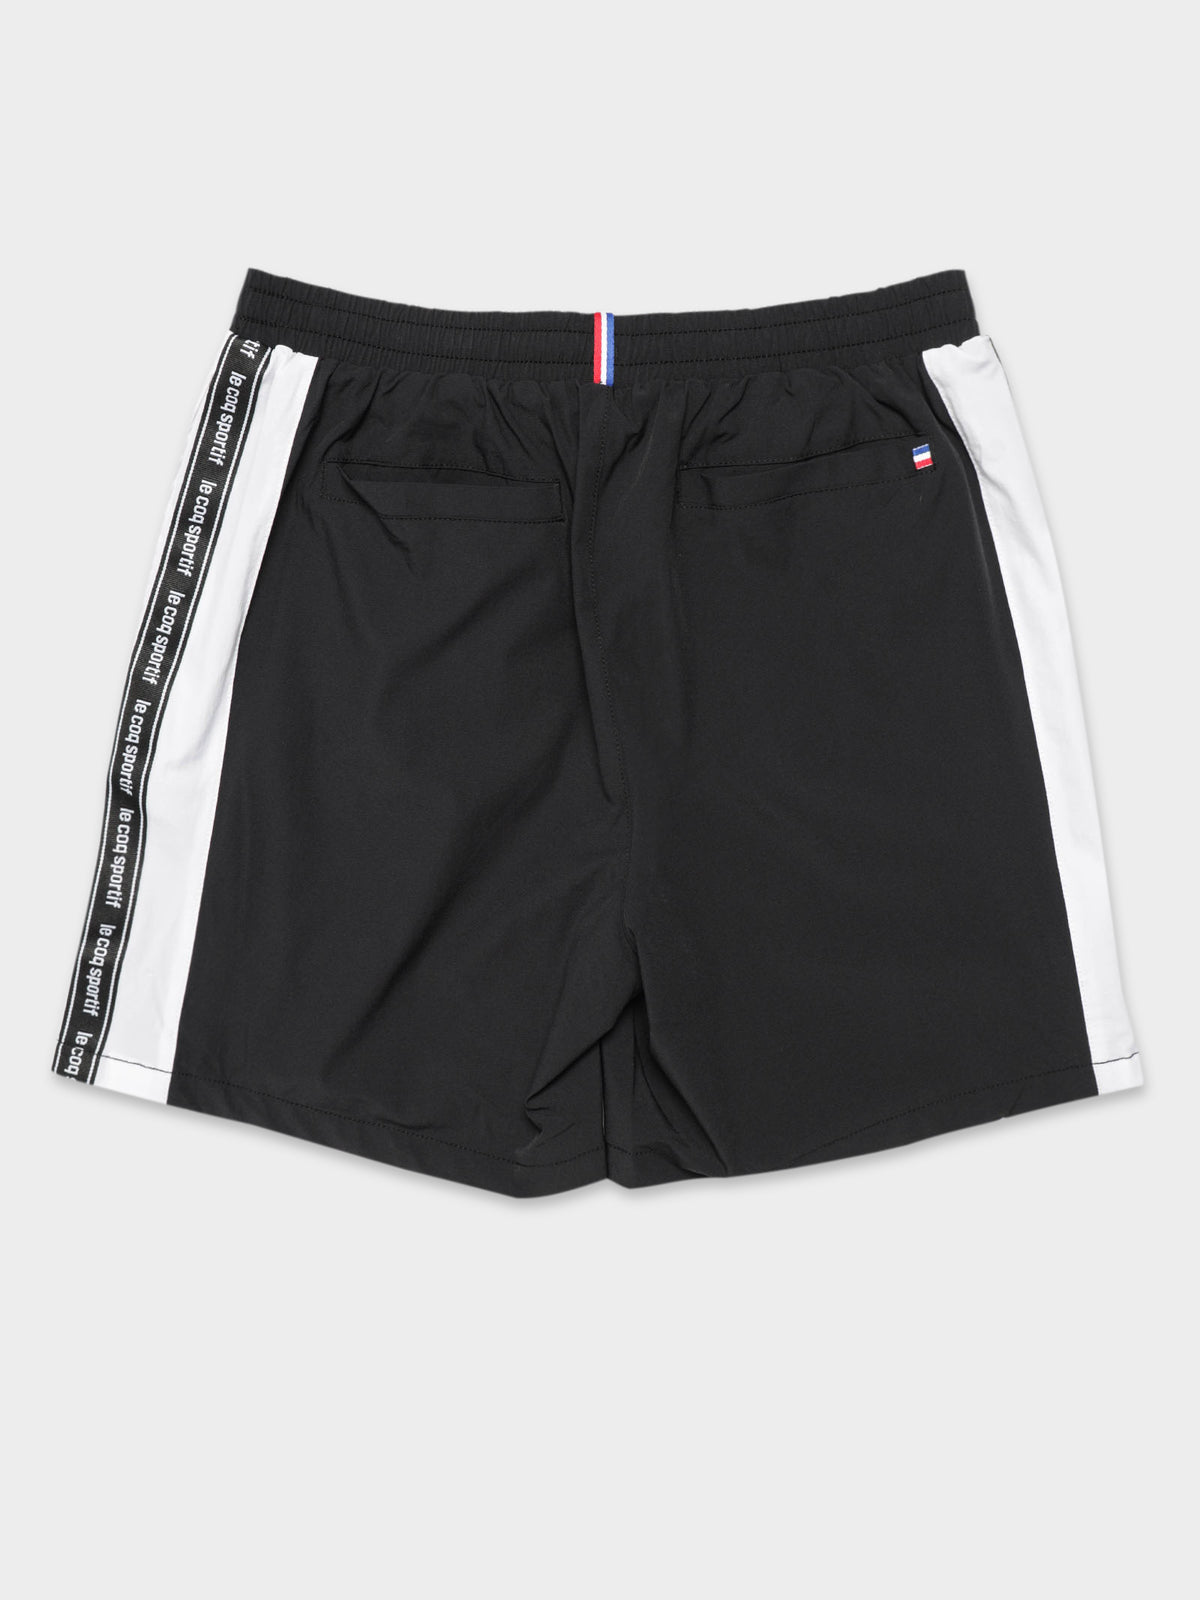 Sponsor Shorts in Black